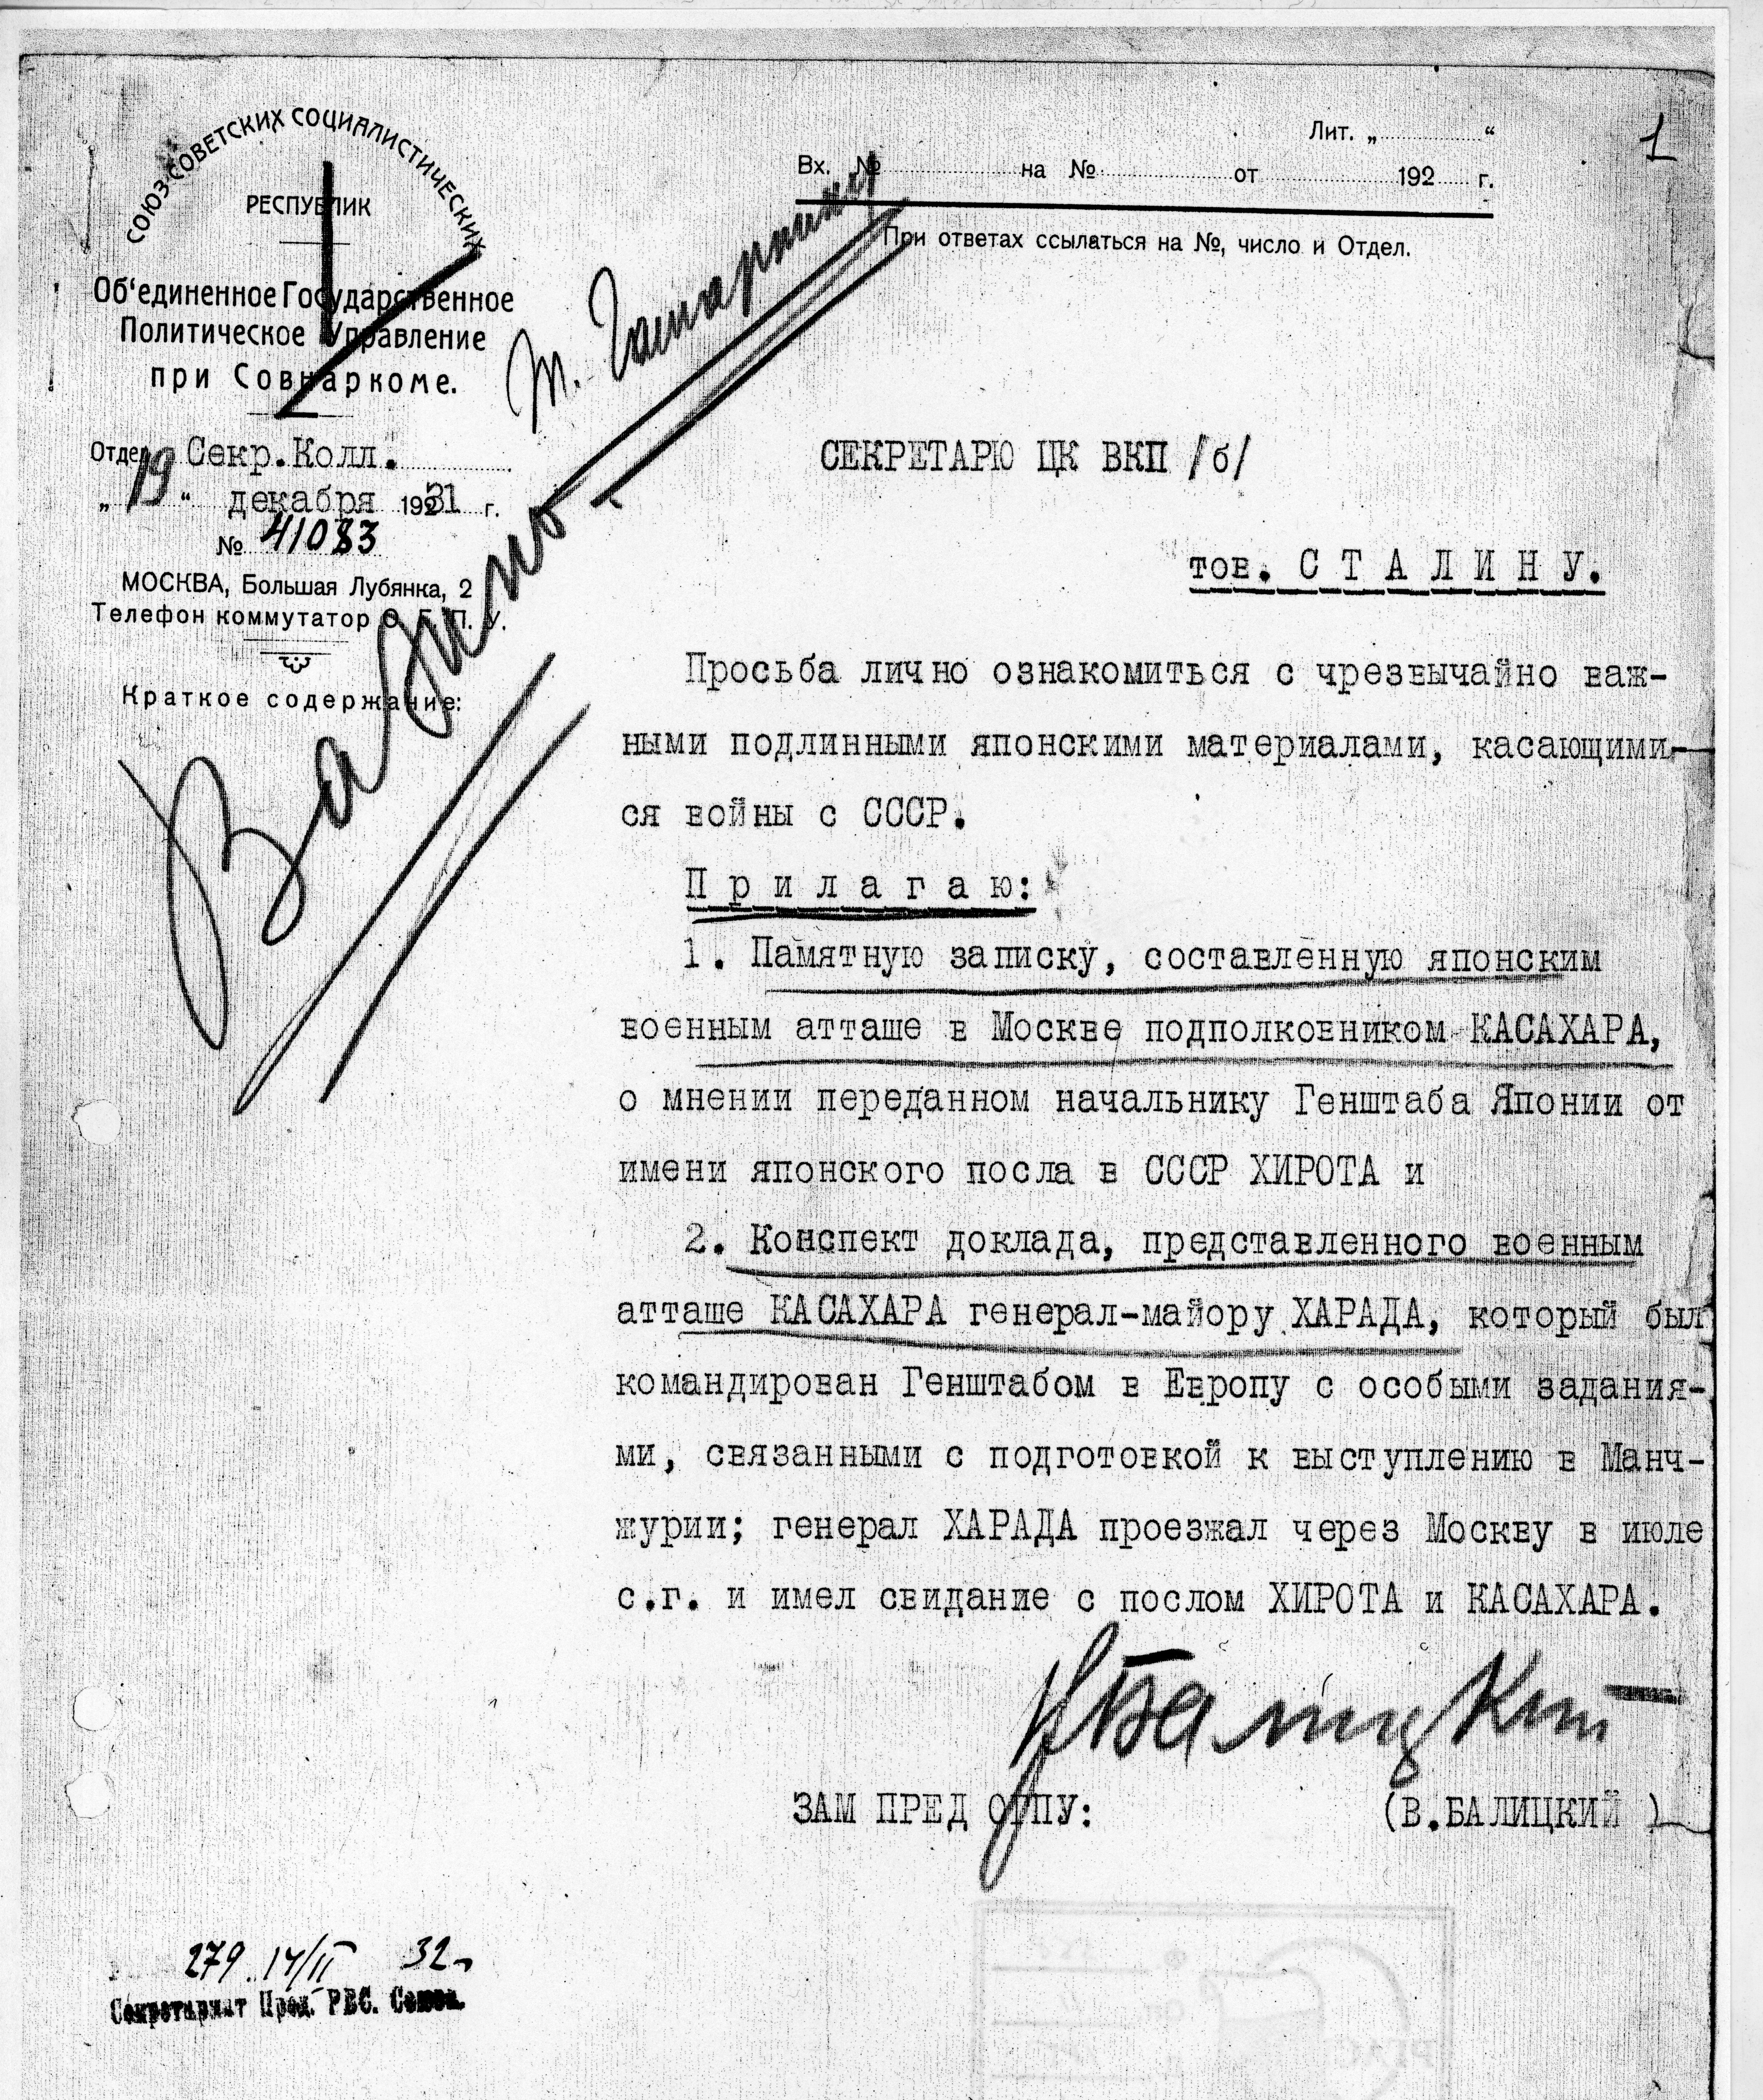 로만 김이 참여한 대 일본대사관 작전 중 하나에 관해 스탈린에게 보내는 보고 메모. 출처: 알렉산드르 쿨라노프